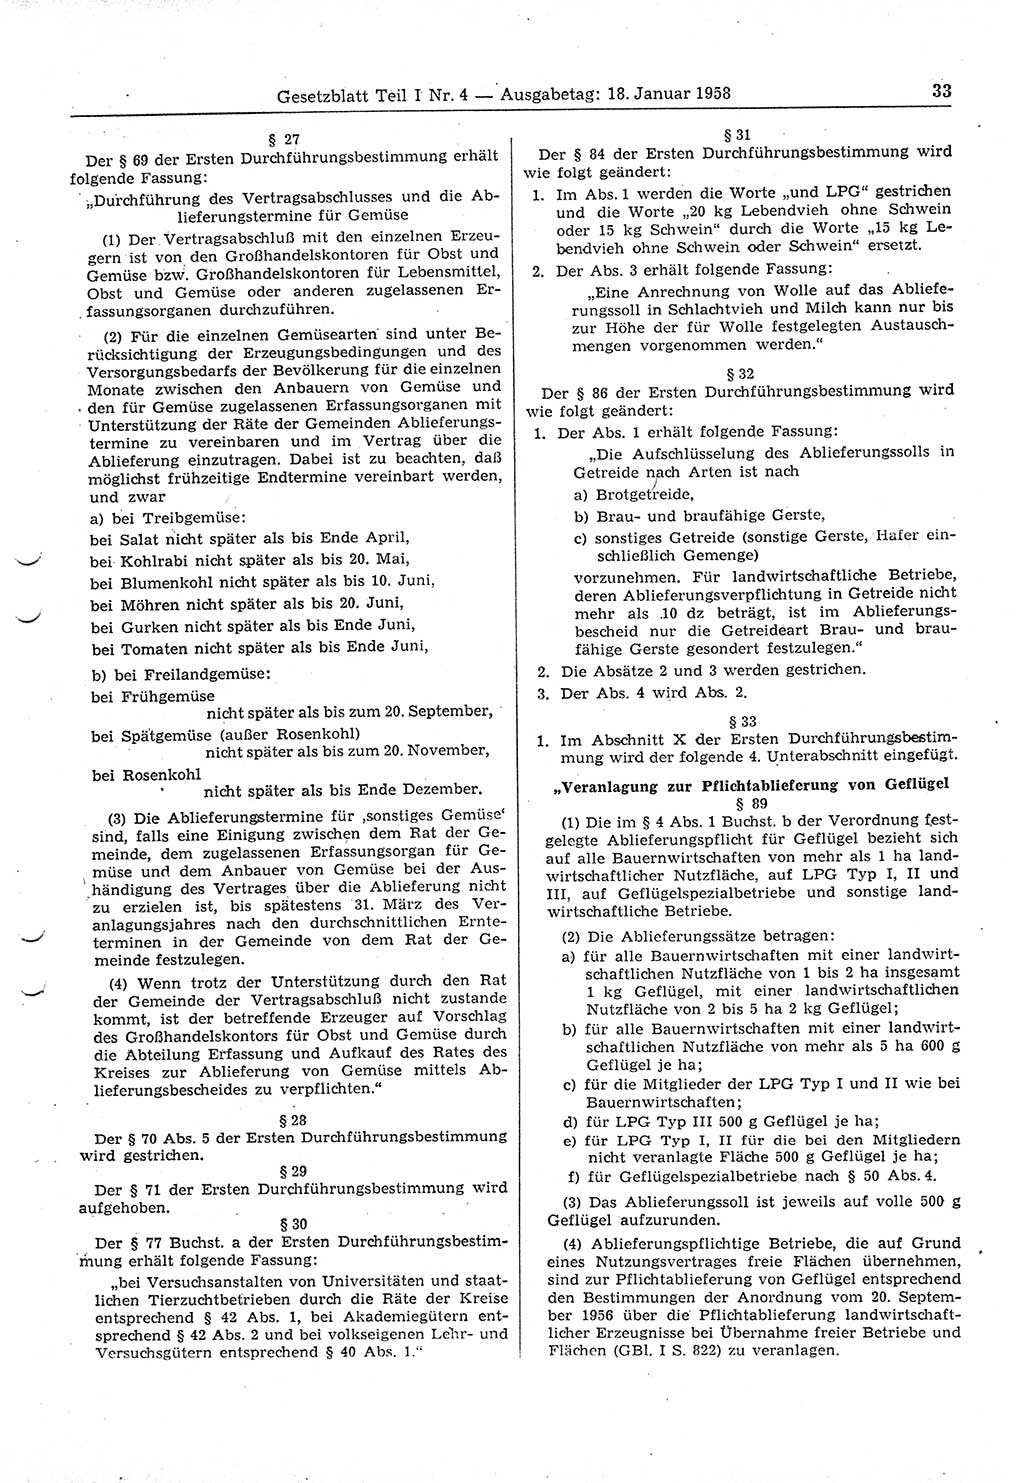 Gesetzblatt (GBl.) der Deutschen Demokratischen Republik (DDR) Teil Ⅰ 1958, Seite 33 (GBl. DDR Ⅰ 1958, S. 33)